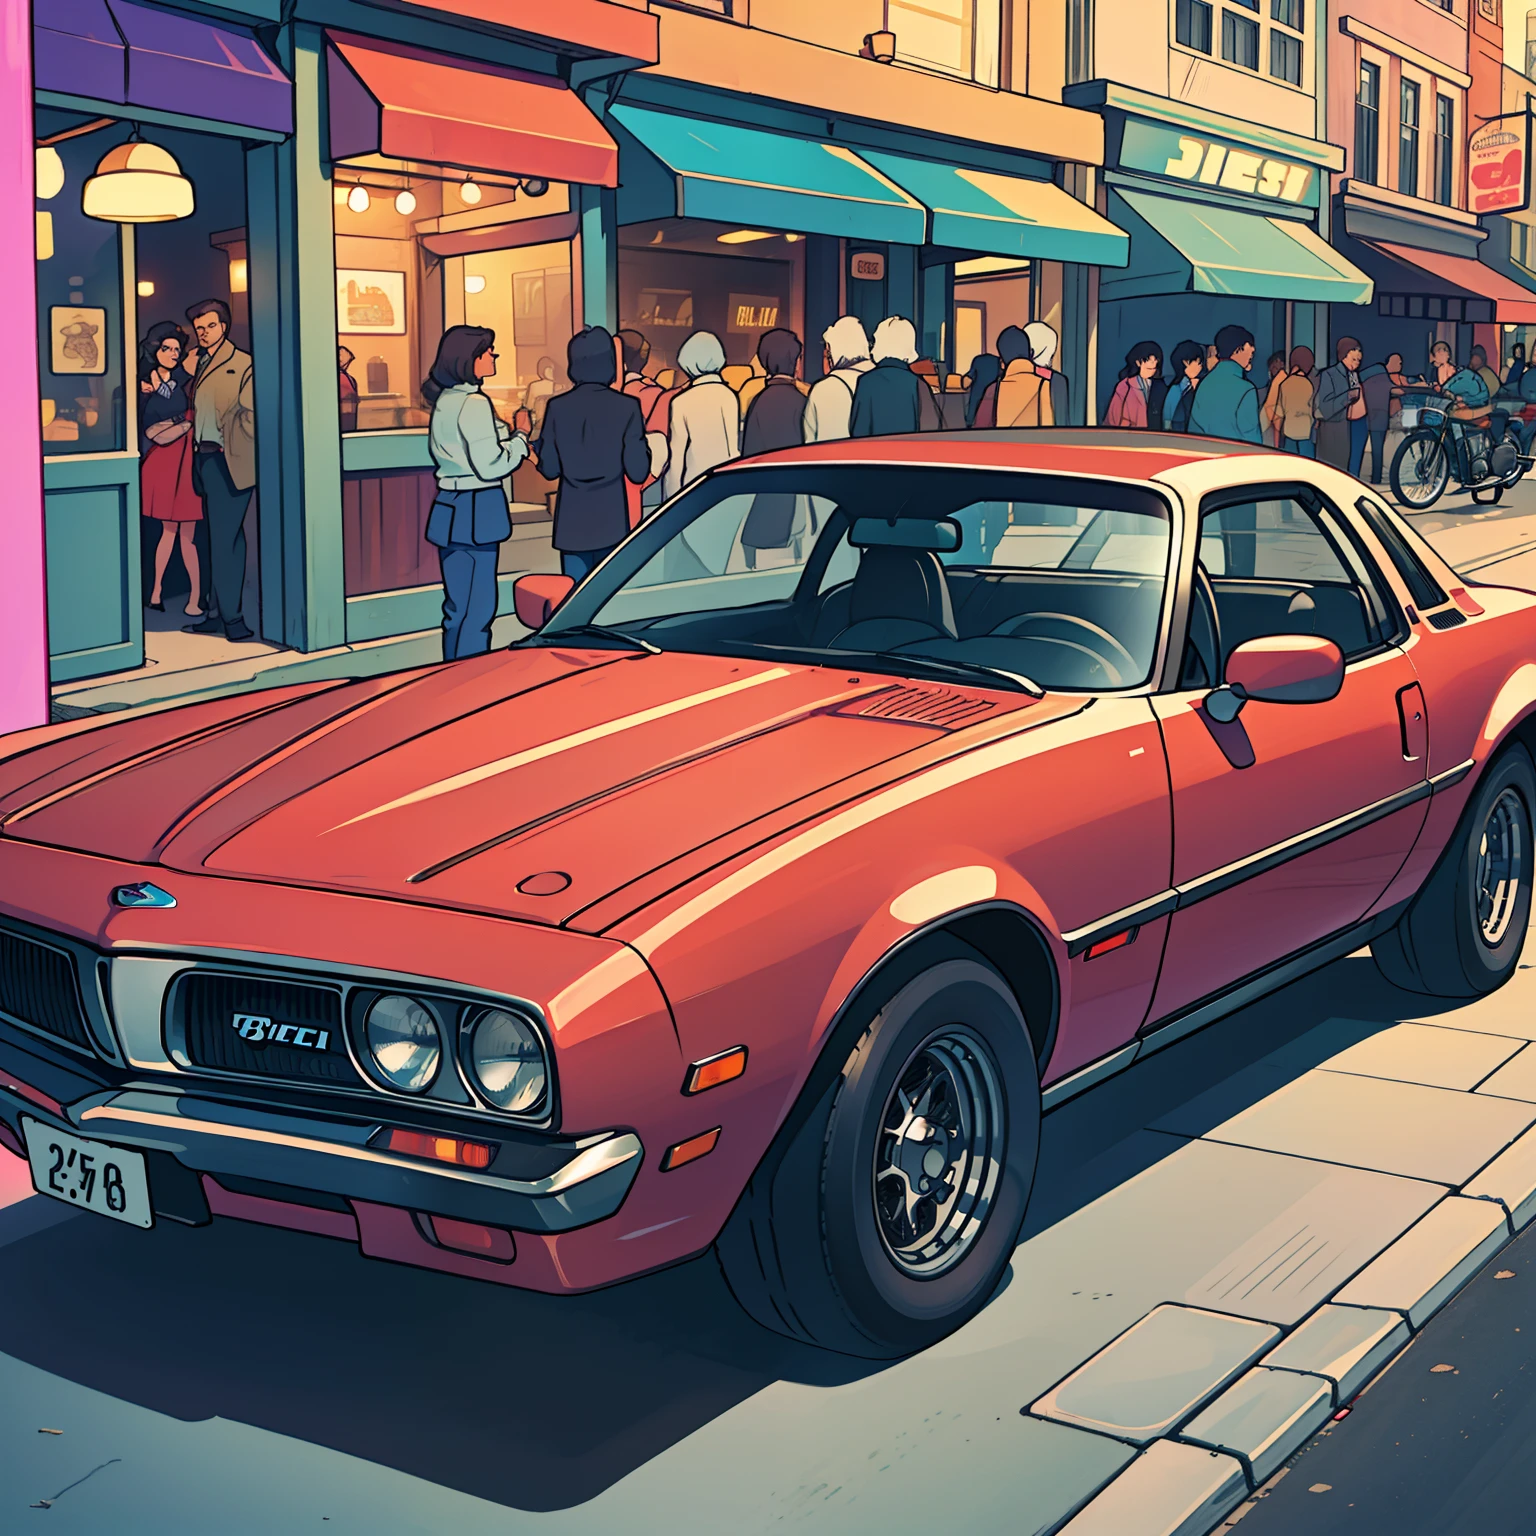 carro clássico dos anos 80, como Pontiac Fiero ou Ford Thunderbird, ultra-detalhado, melhor qualidade, vista lateral, colorida, na rua movimentada de lojas vintage e restaurantes vintage no fundo, iluminação e sombra perfeitas.